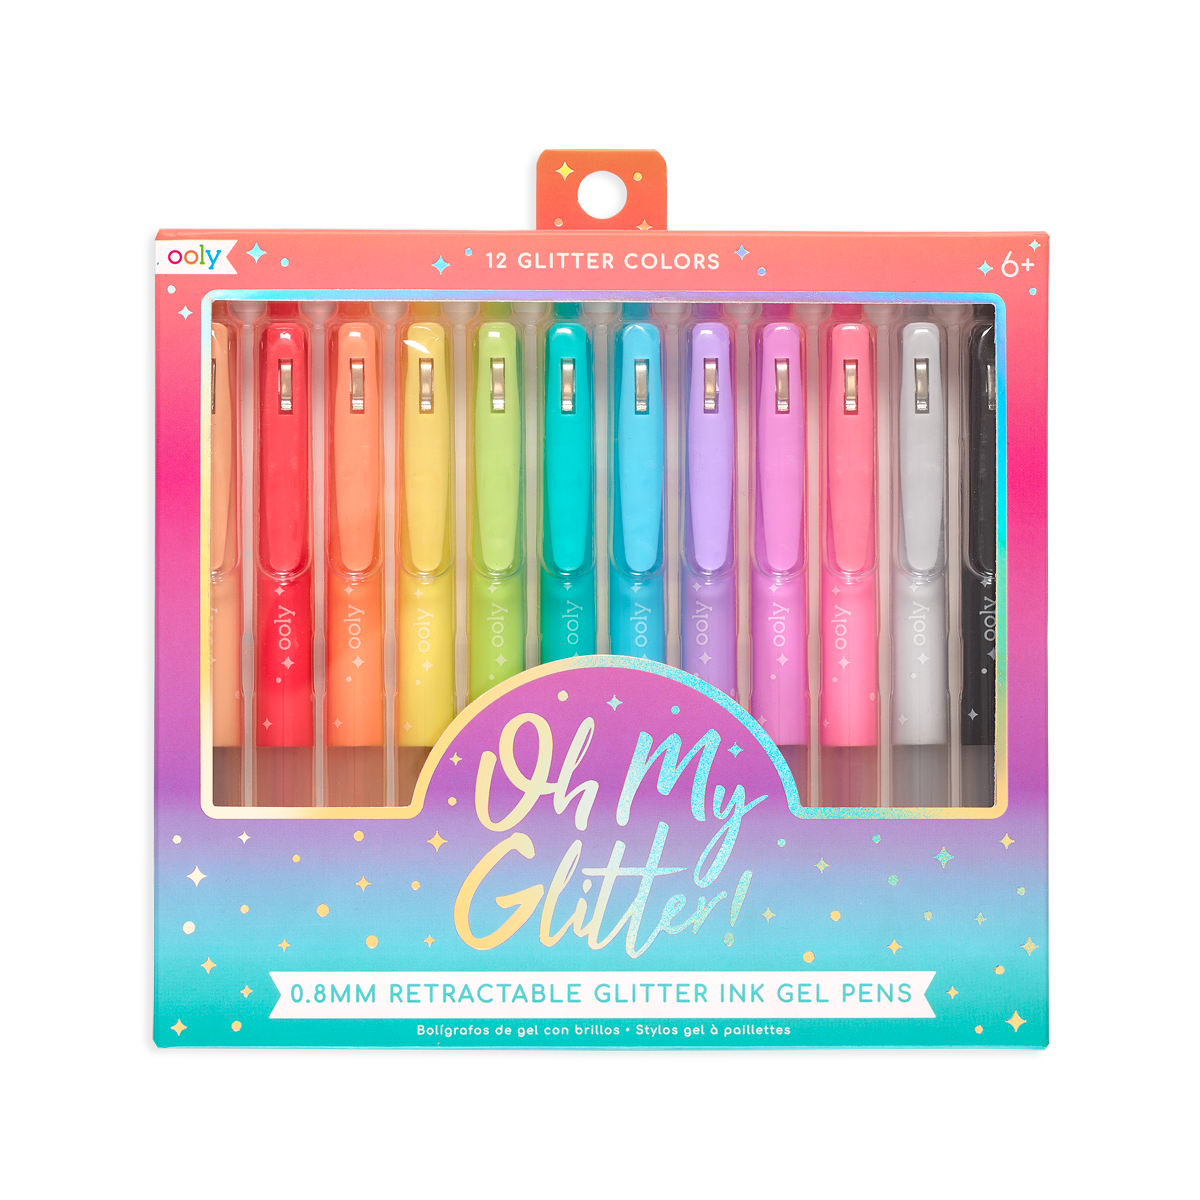 Yummy Yummy Scented 12 Glitter Colored Gel Pens – www